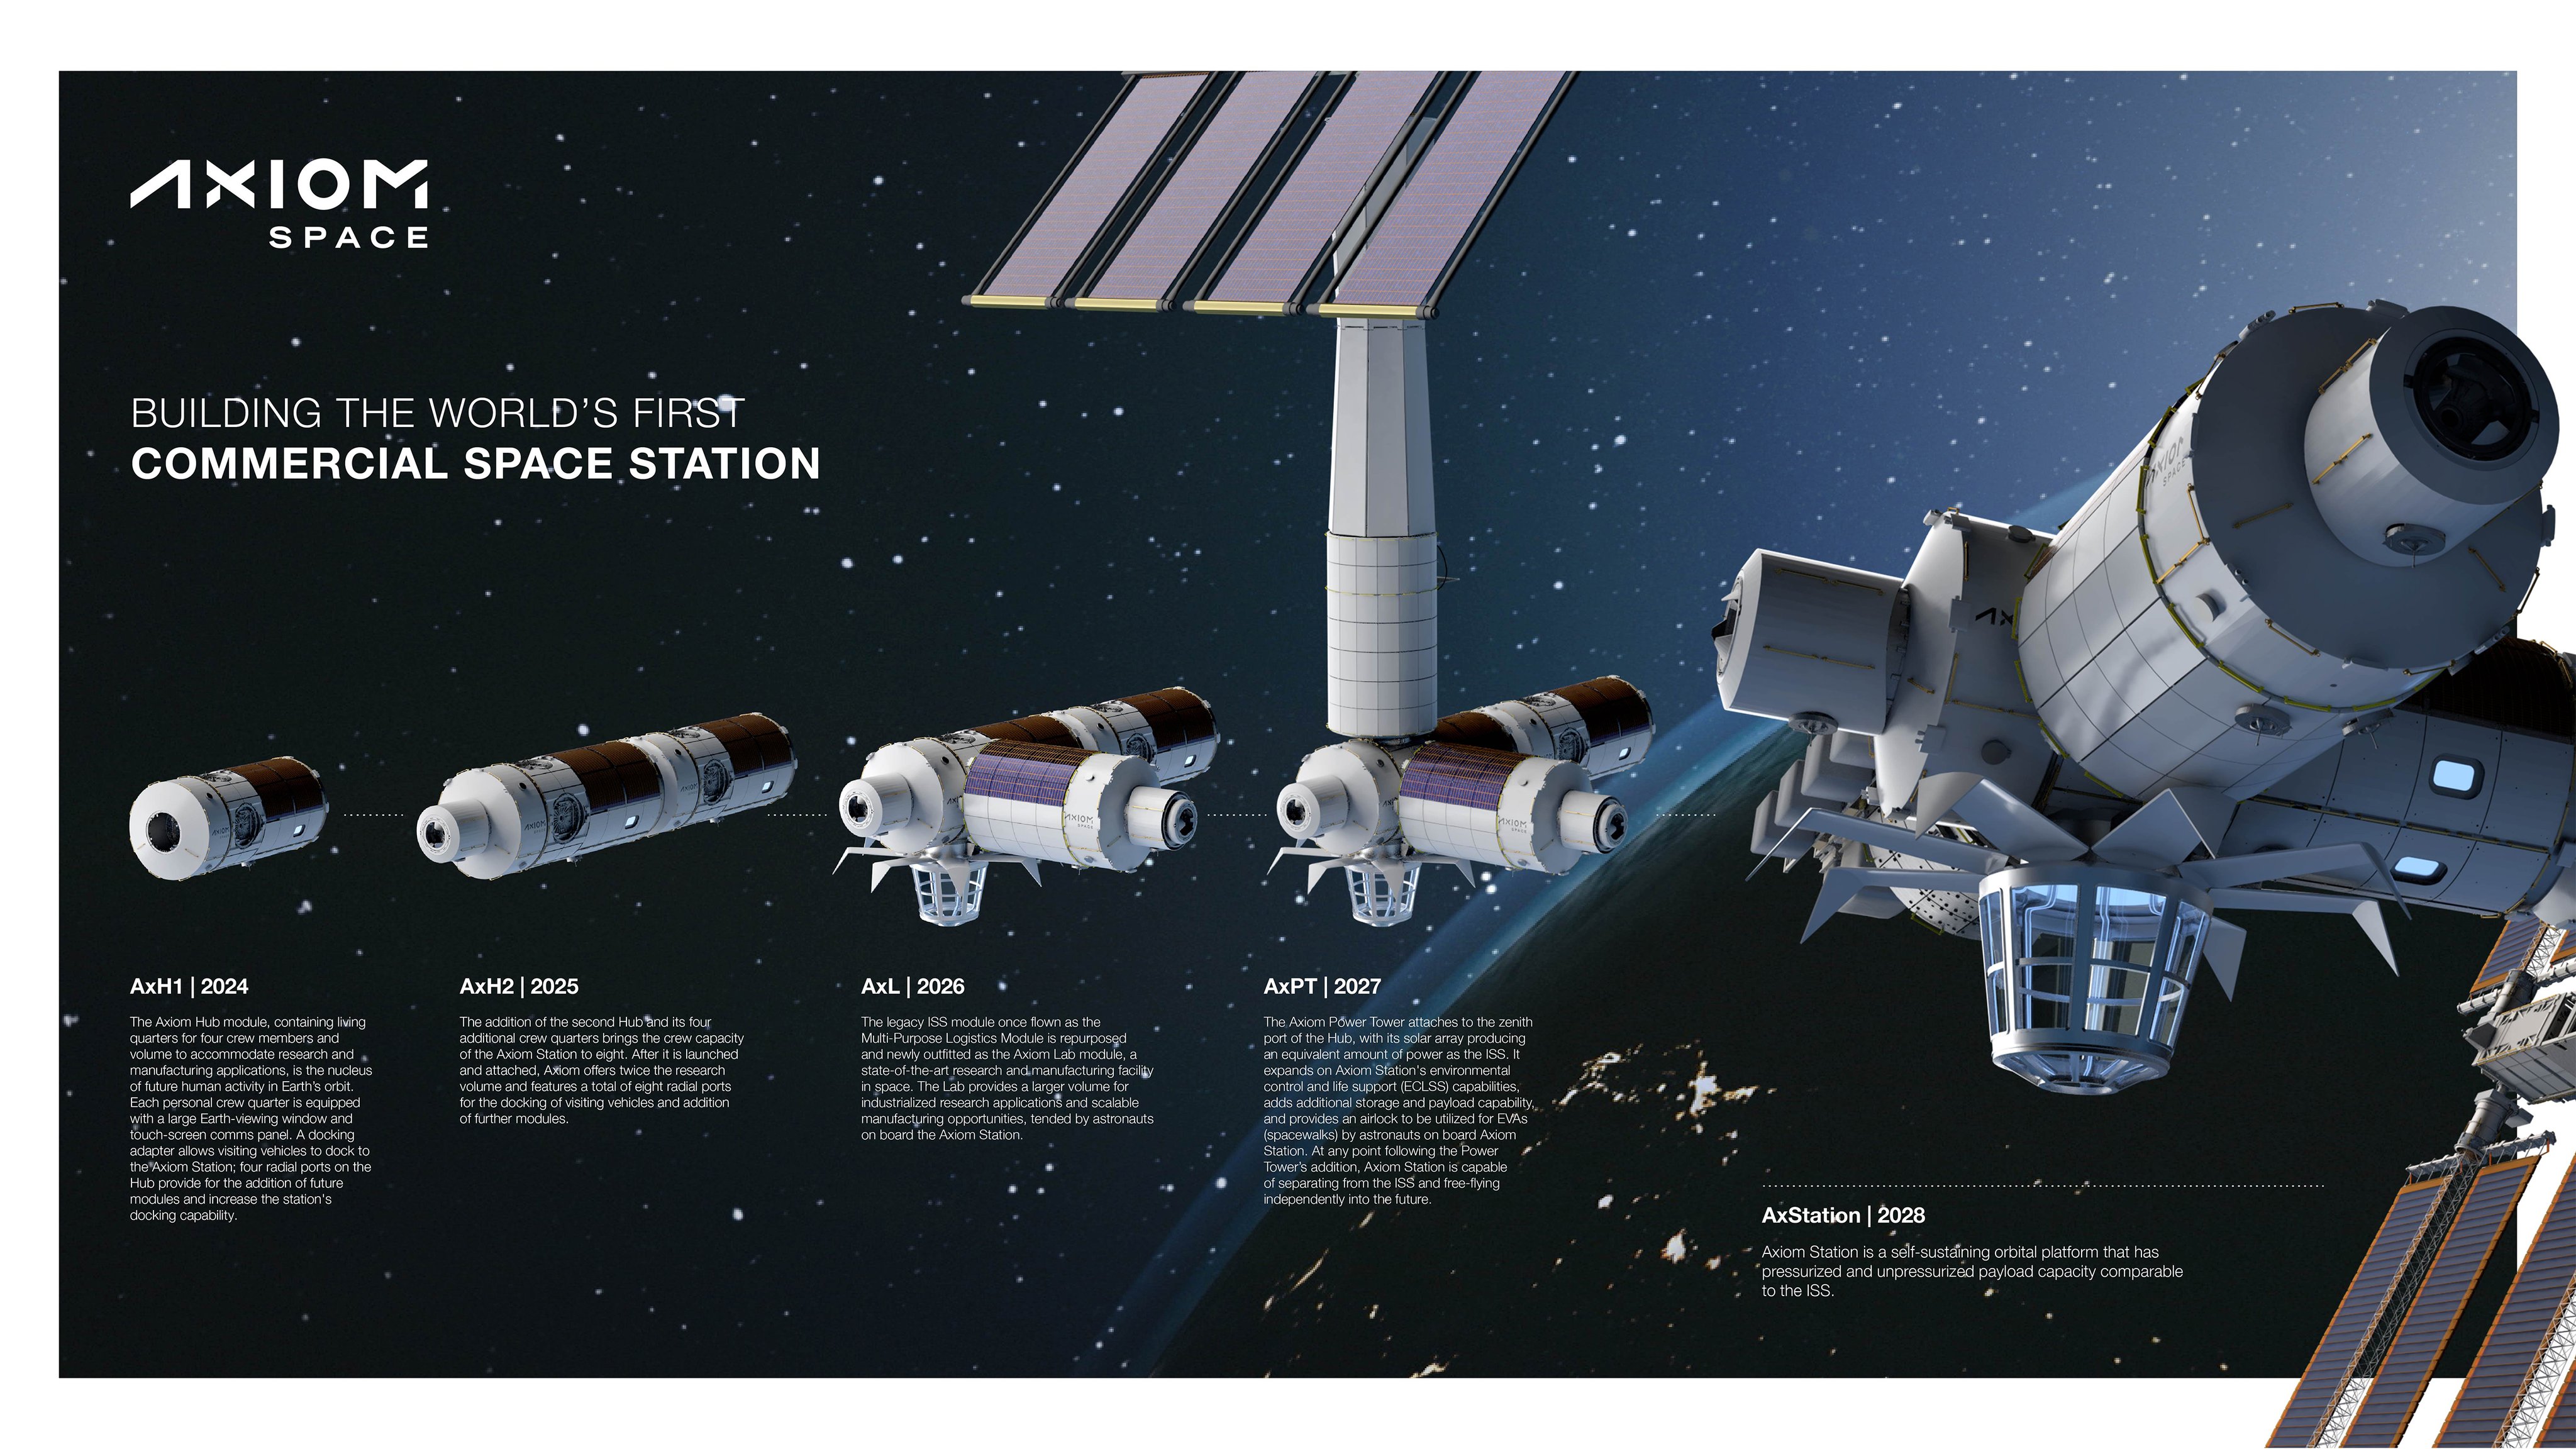 这是axiom space首次前往国际空间站的私人宇航员任务,届时美国国家